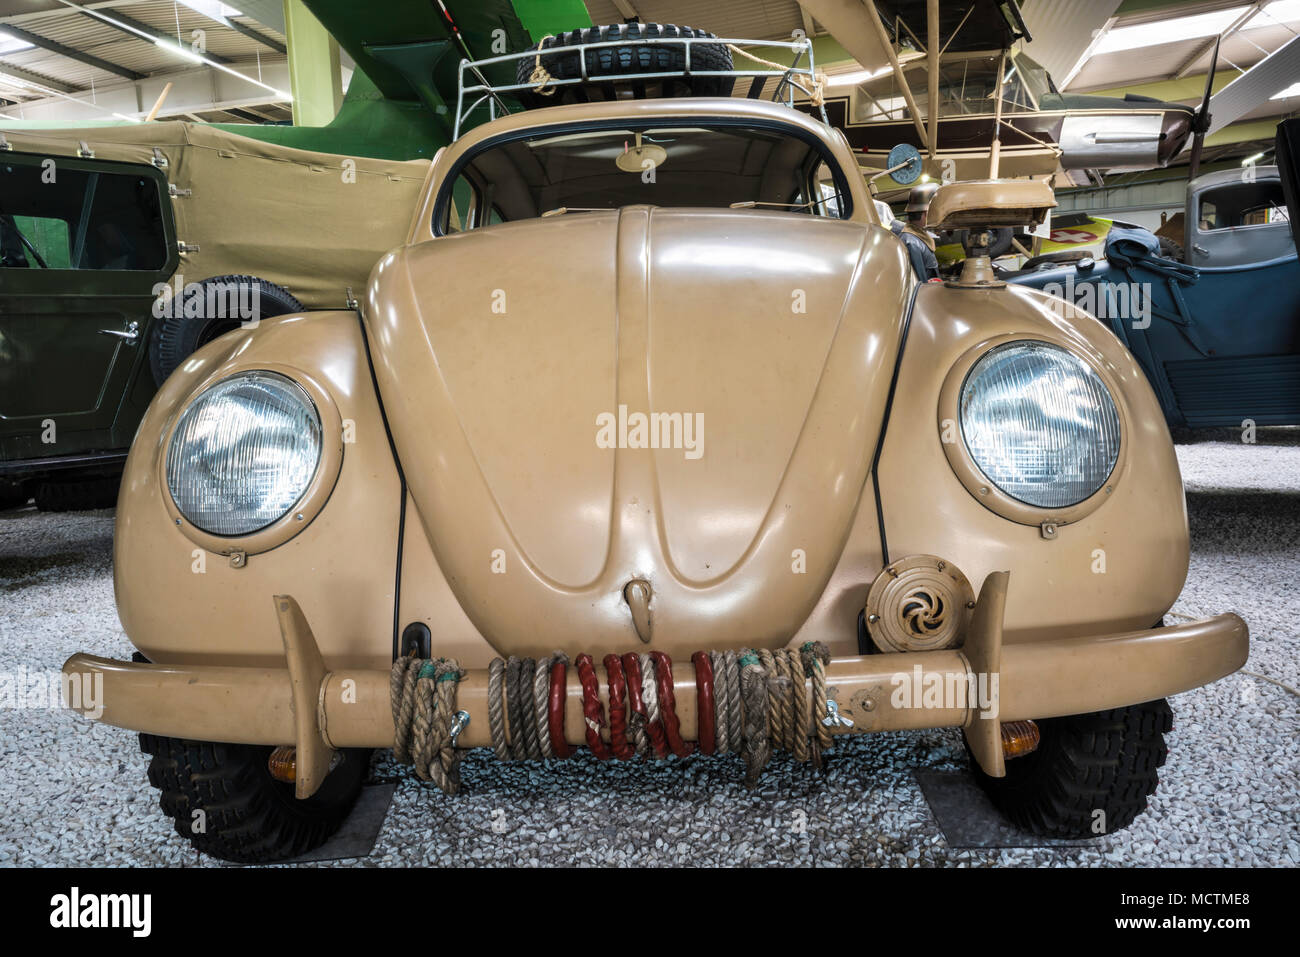 Nostalgische VW Beetle Auto in Camouflage Farbe mit Dachgepäckträger und Reserverad, Auto & Technik Museum, Sinsheim, Deutschland Stockfoto